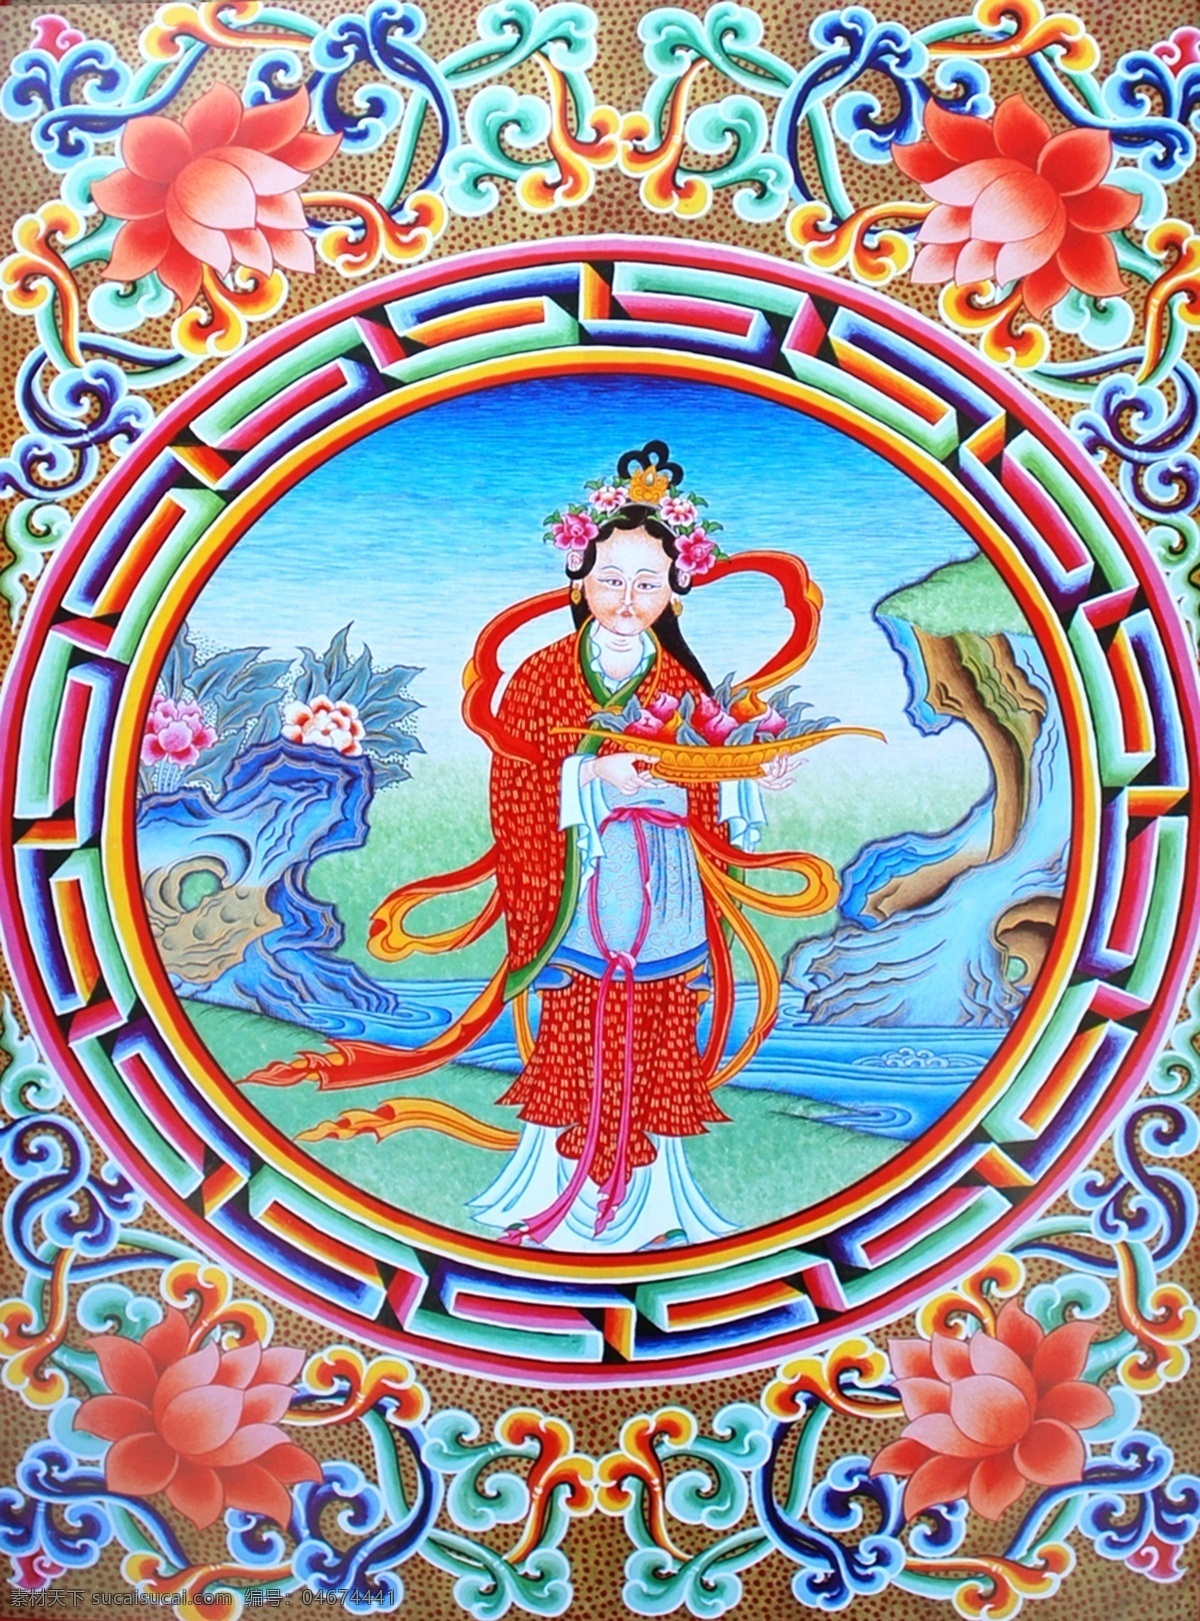 无框画 佛教 手绘 墙画 壁画 卧室画 绘画 吉祥 图案 藏族 宗教 和平 平安 宗教设计 藏族传统图案 女神 绘画书法 文化艺术